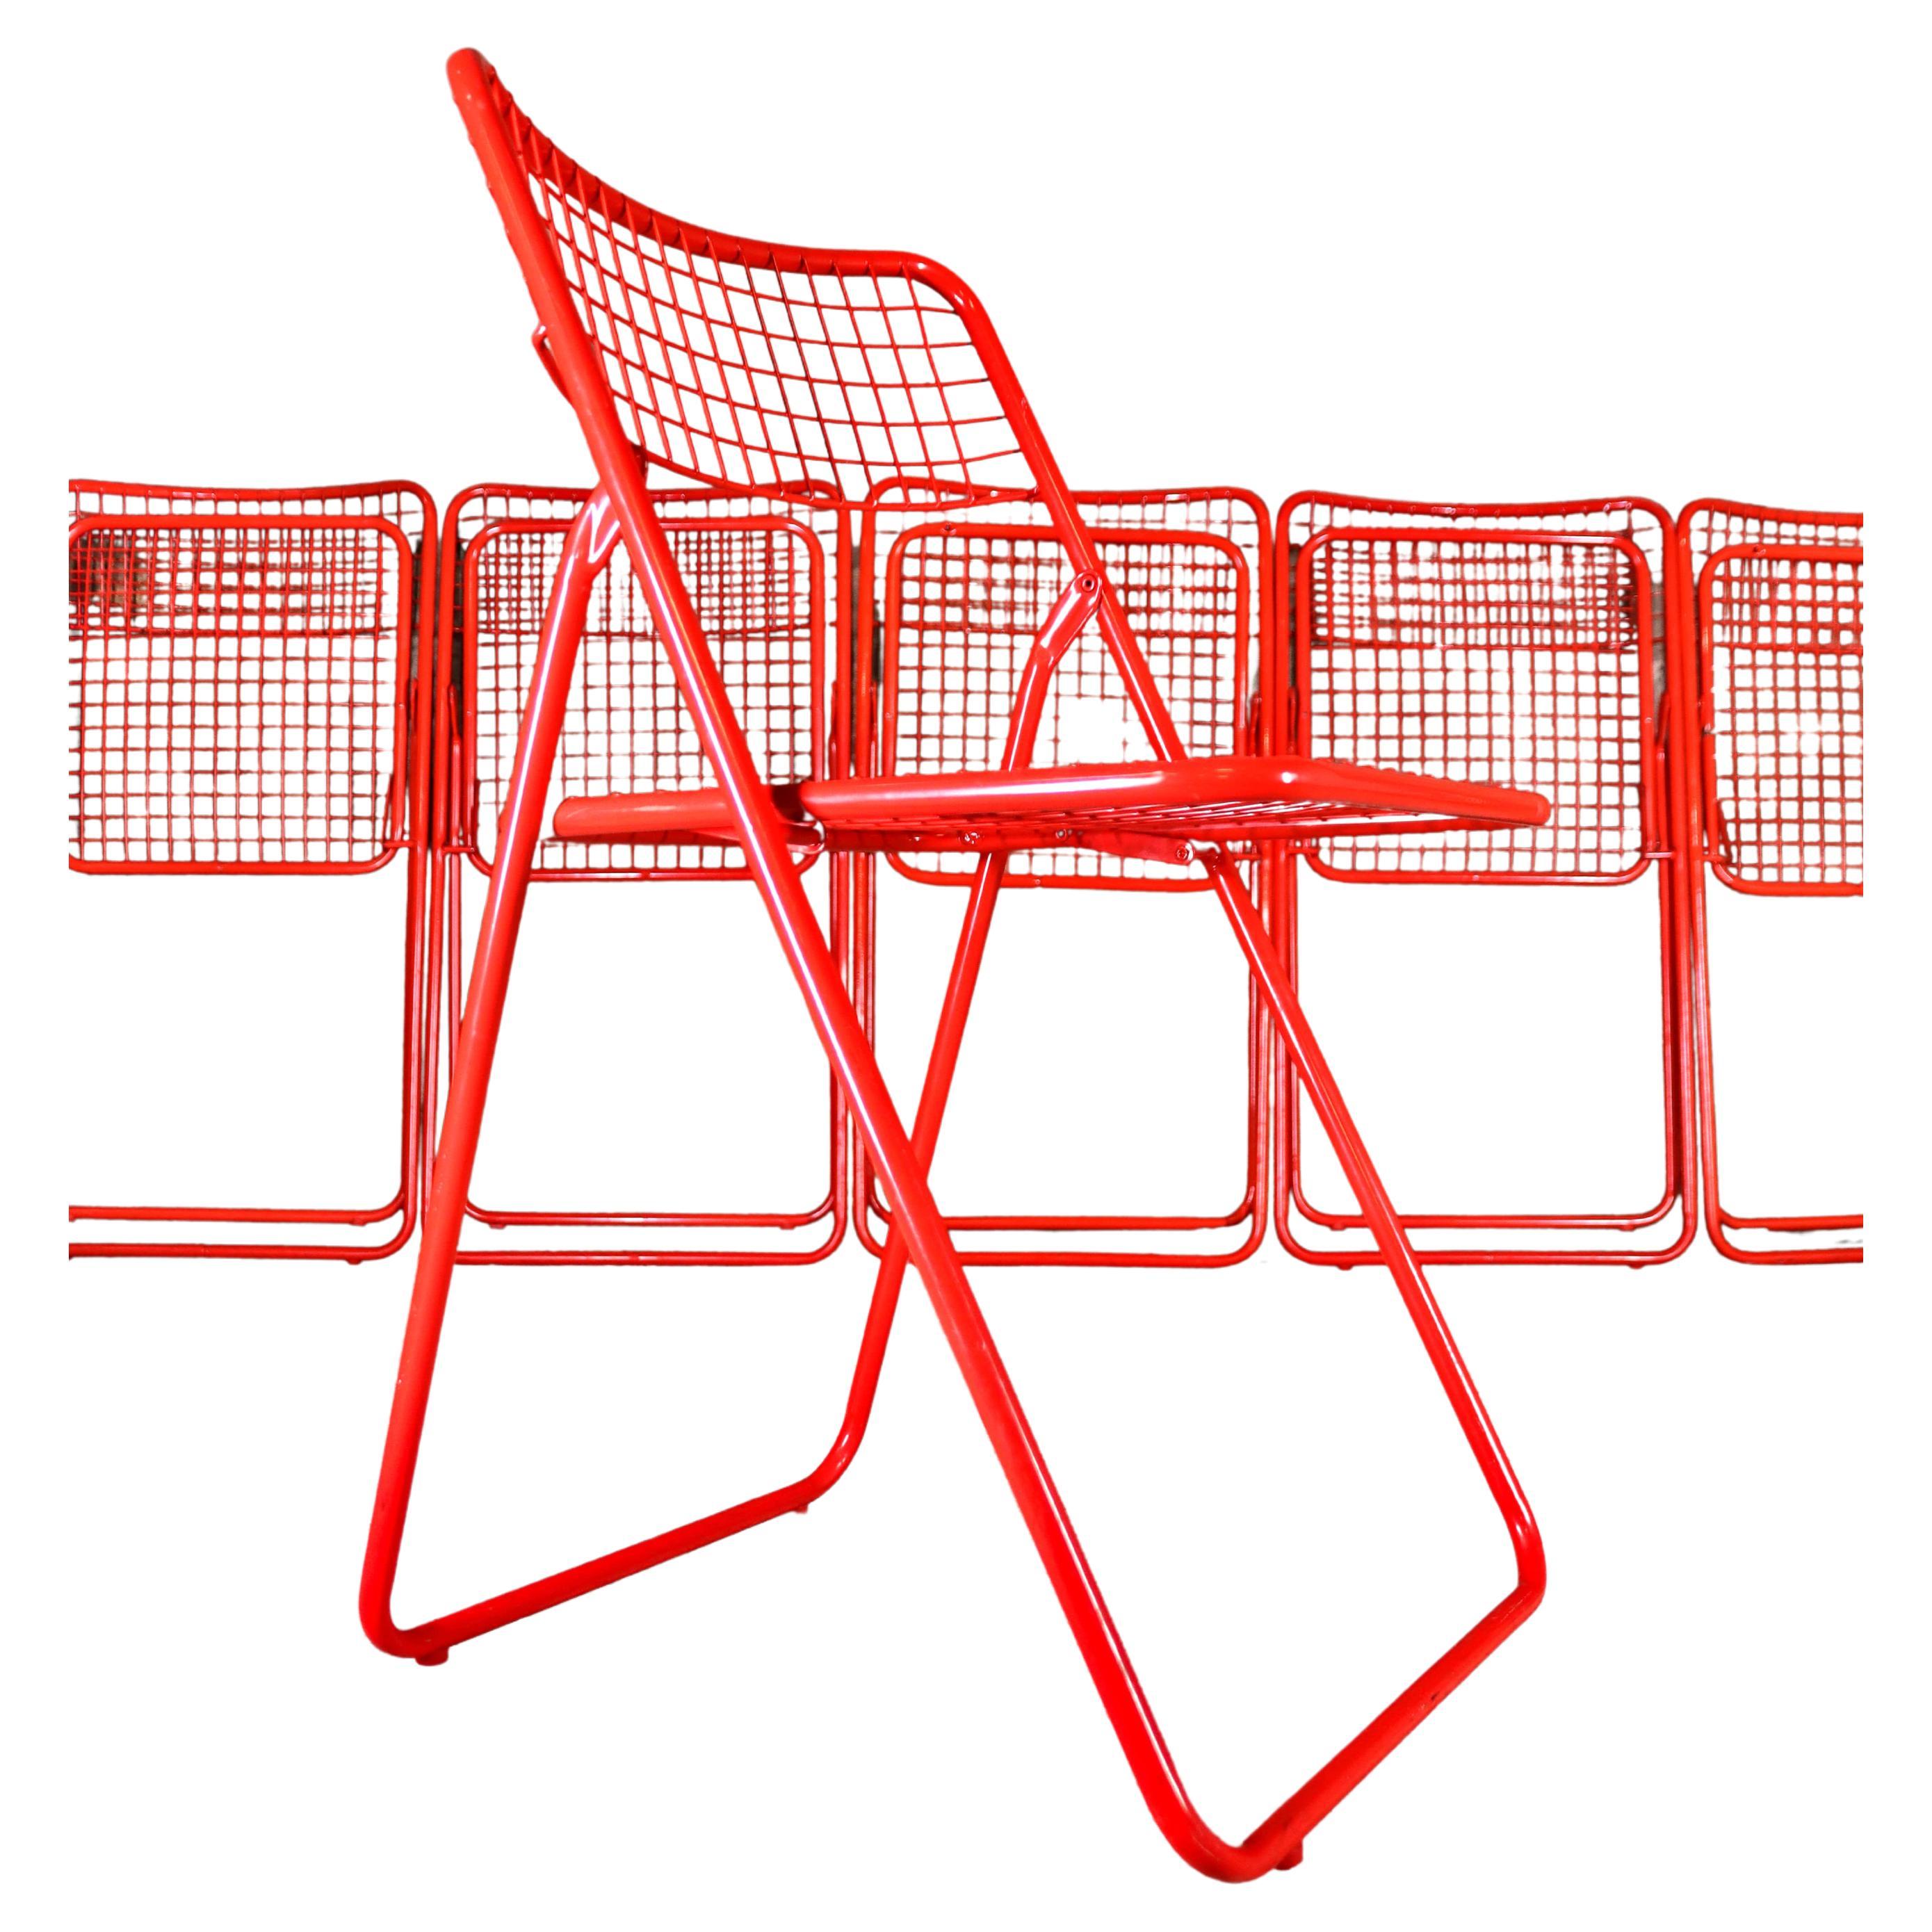 IKEA - Rappen - Ted Net Chair - Rot - 6 verfügbar - Niels Gammelgaard - 1976